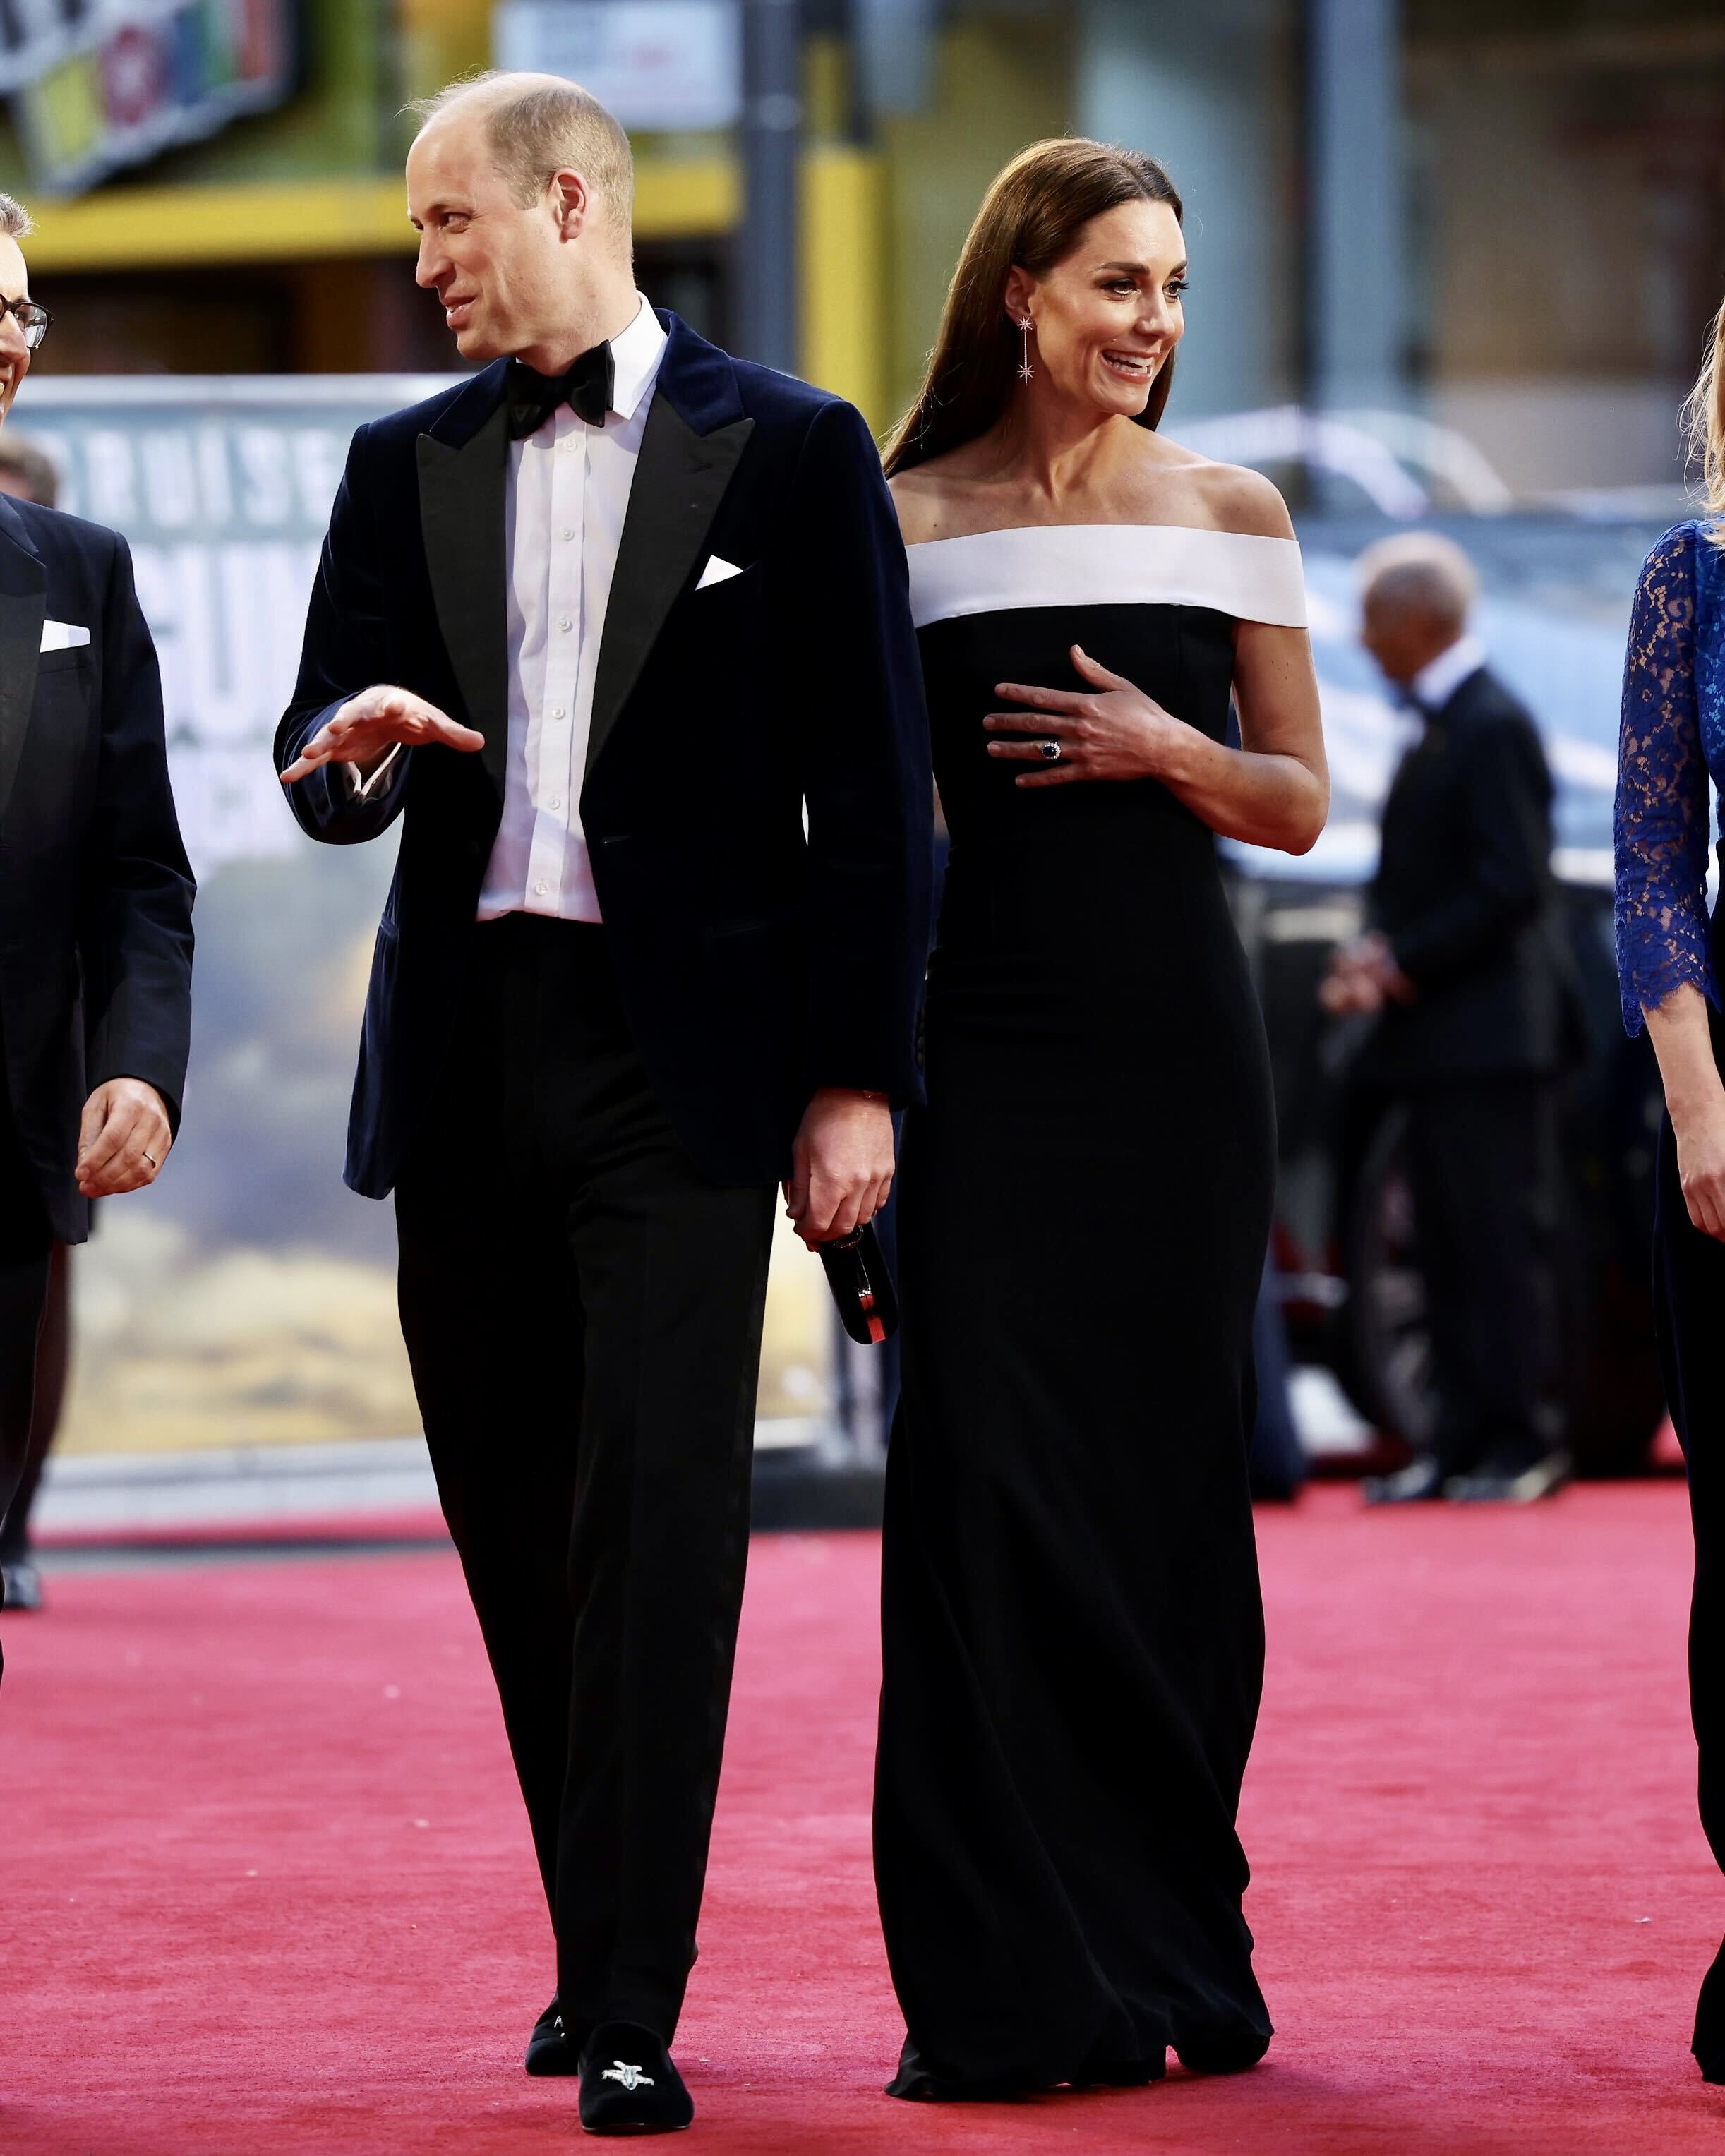 Кейт Миддлтон в платье с открытыми плечами появилась на премьере фильма «Топ Ган: Мэверик»